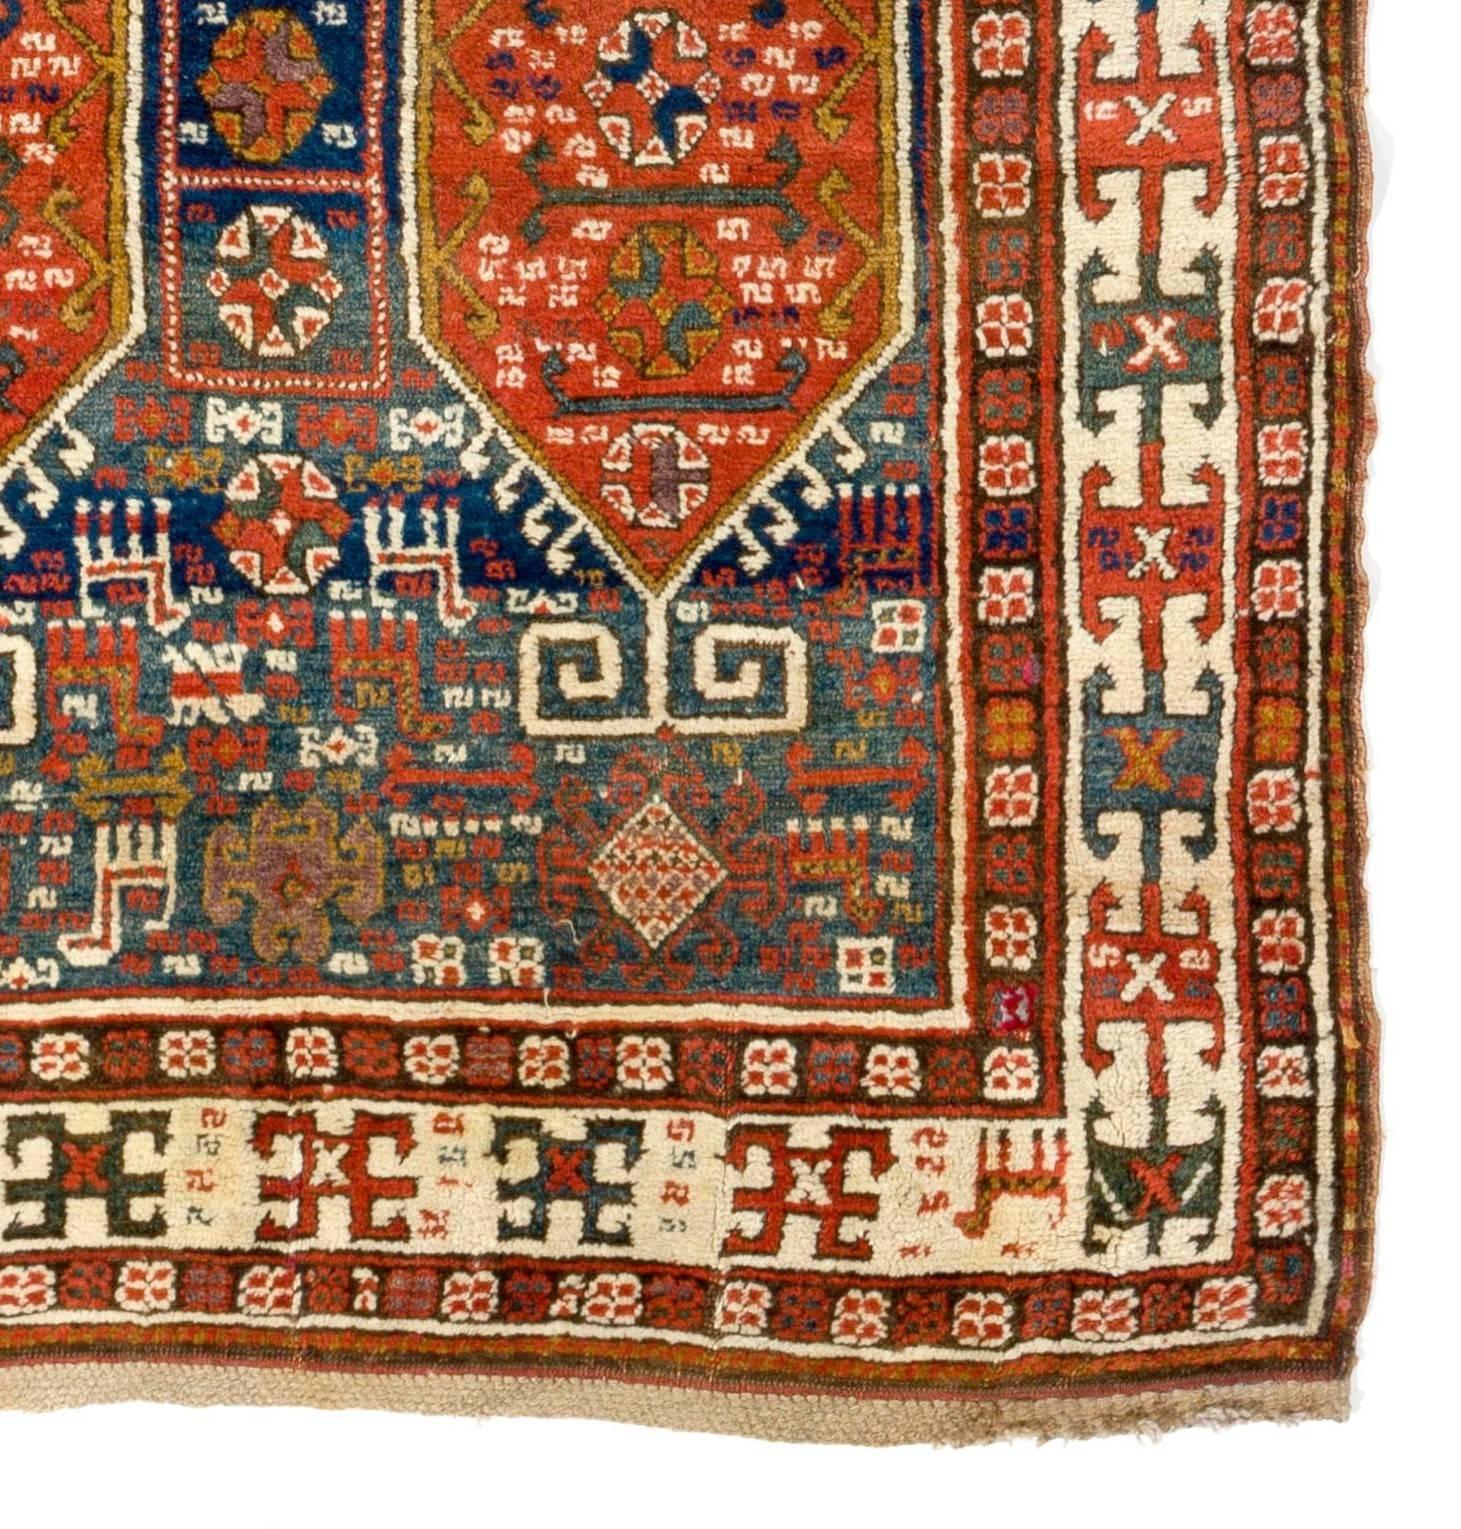 Hand-Knotted Antique Caucasian Karabakh Runner Rug, Tribal Carpet, Full Pile. 4.2 x 9.3 ft